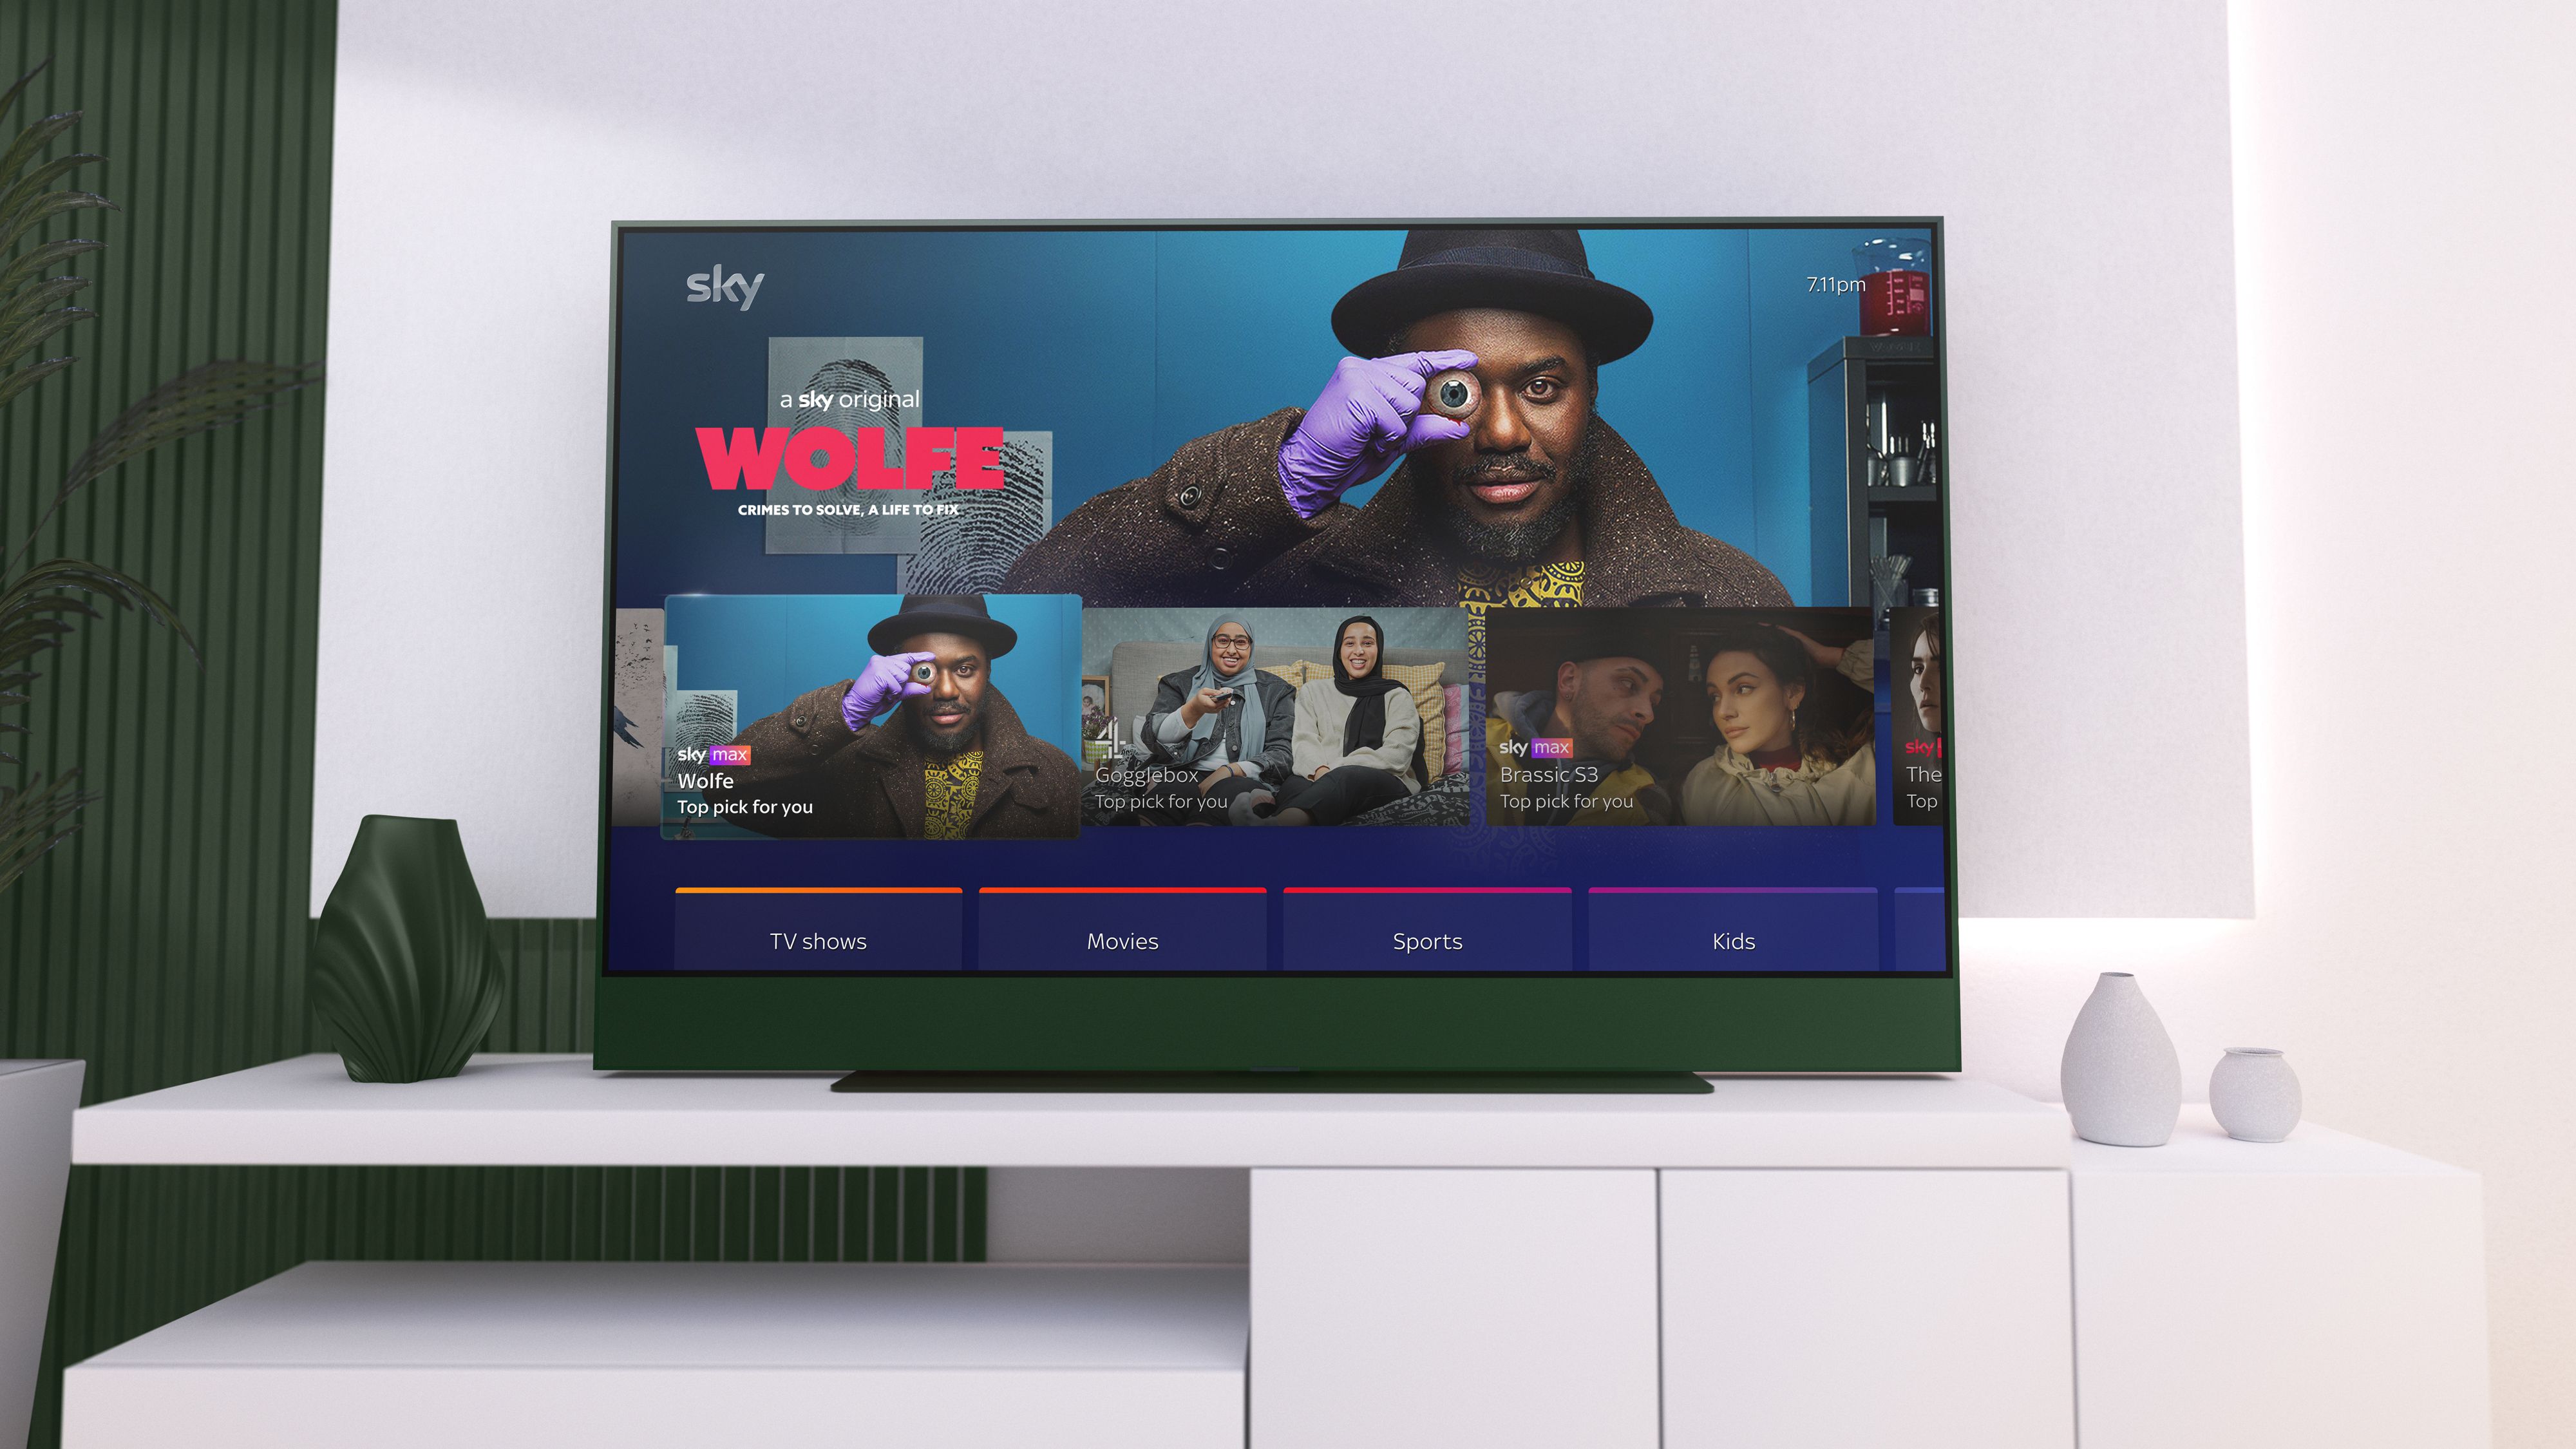 Sky Glass TV là một trong những sản phẩm đột phá của công nghệ truyền hình hiện đại. Với thiết kế tinh tế và độ phân giải cao, Sky Glass TV đem lại cho bạn trải nghiệm xem phim tuyệt vời hơn bao giờ hết. Xem hình ảnh liên quan đến từ khóa \